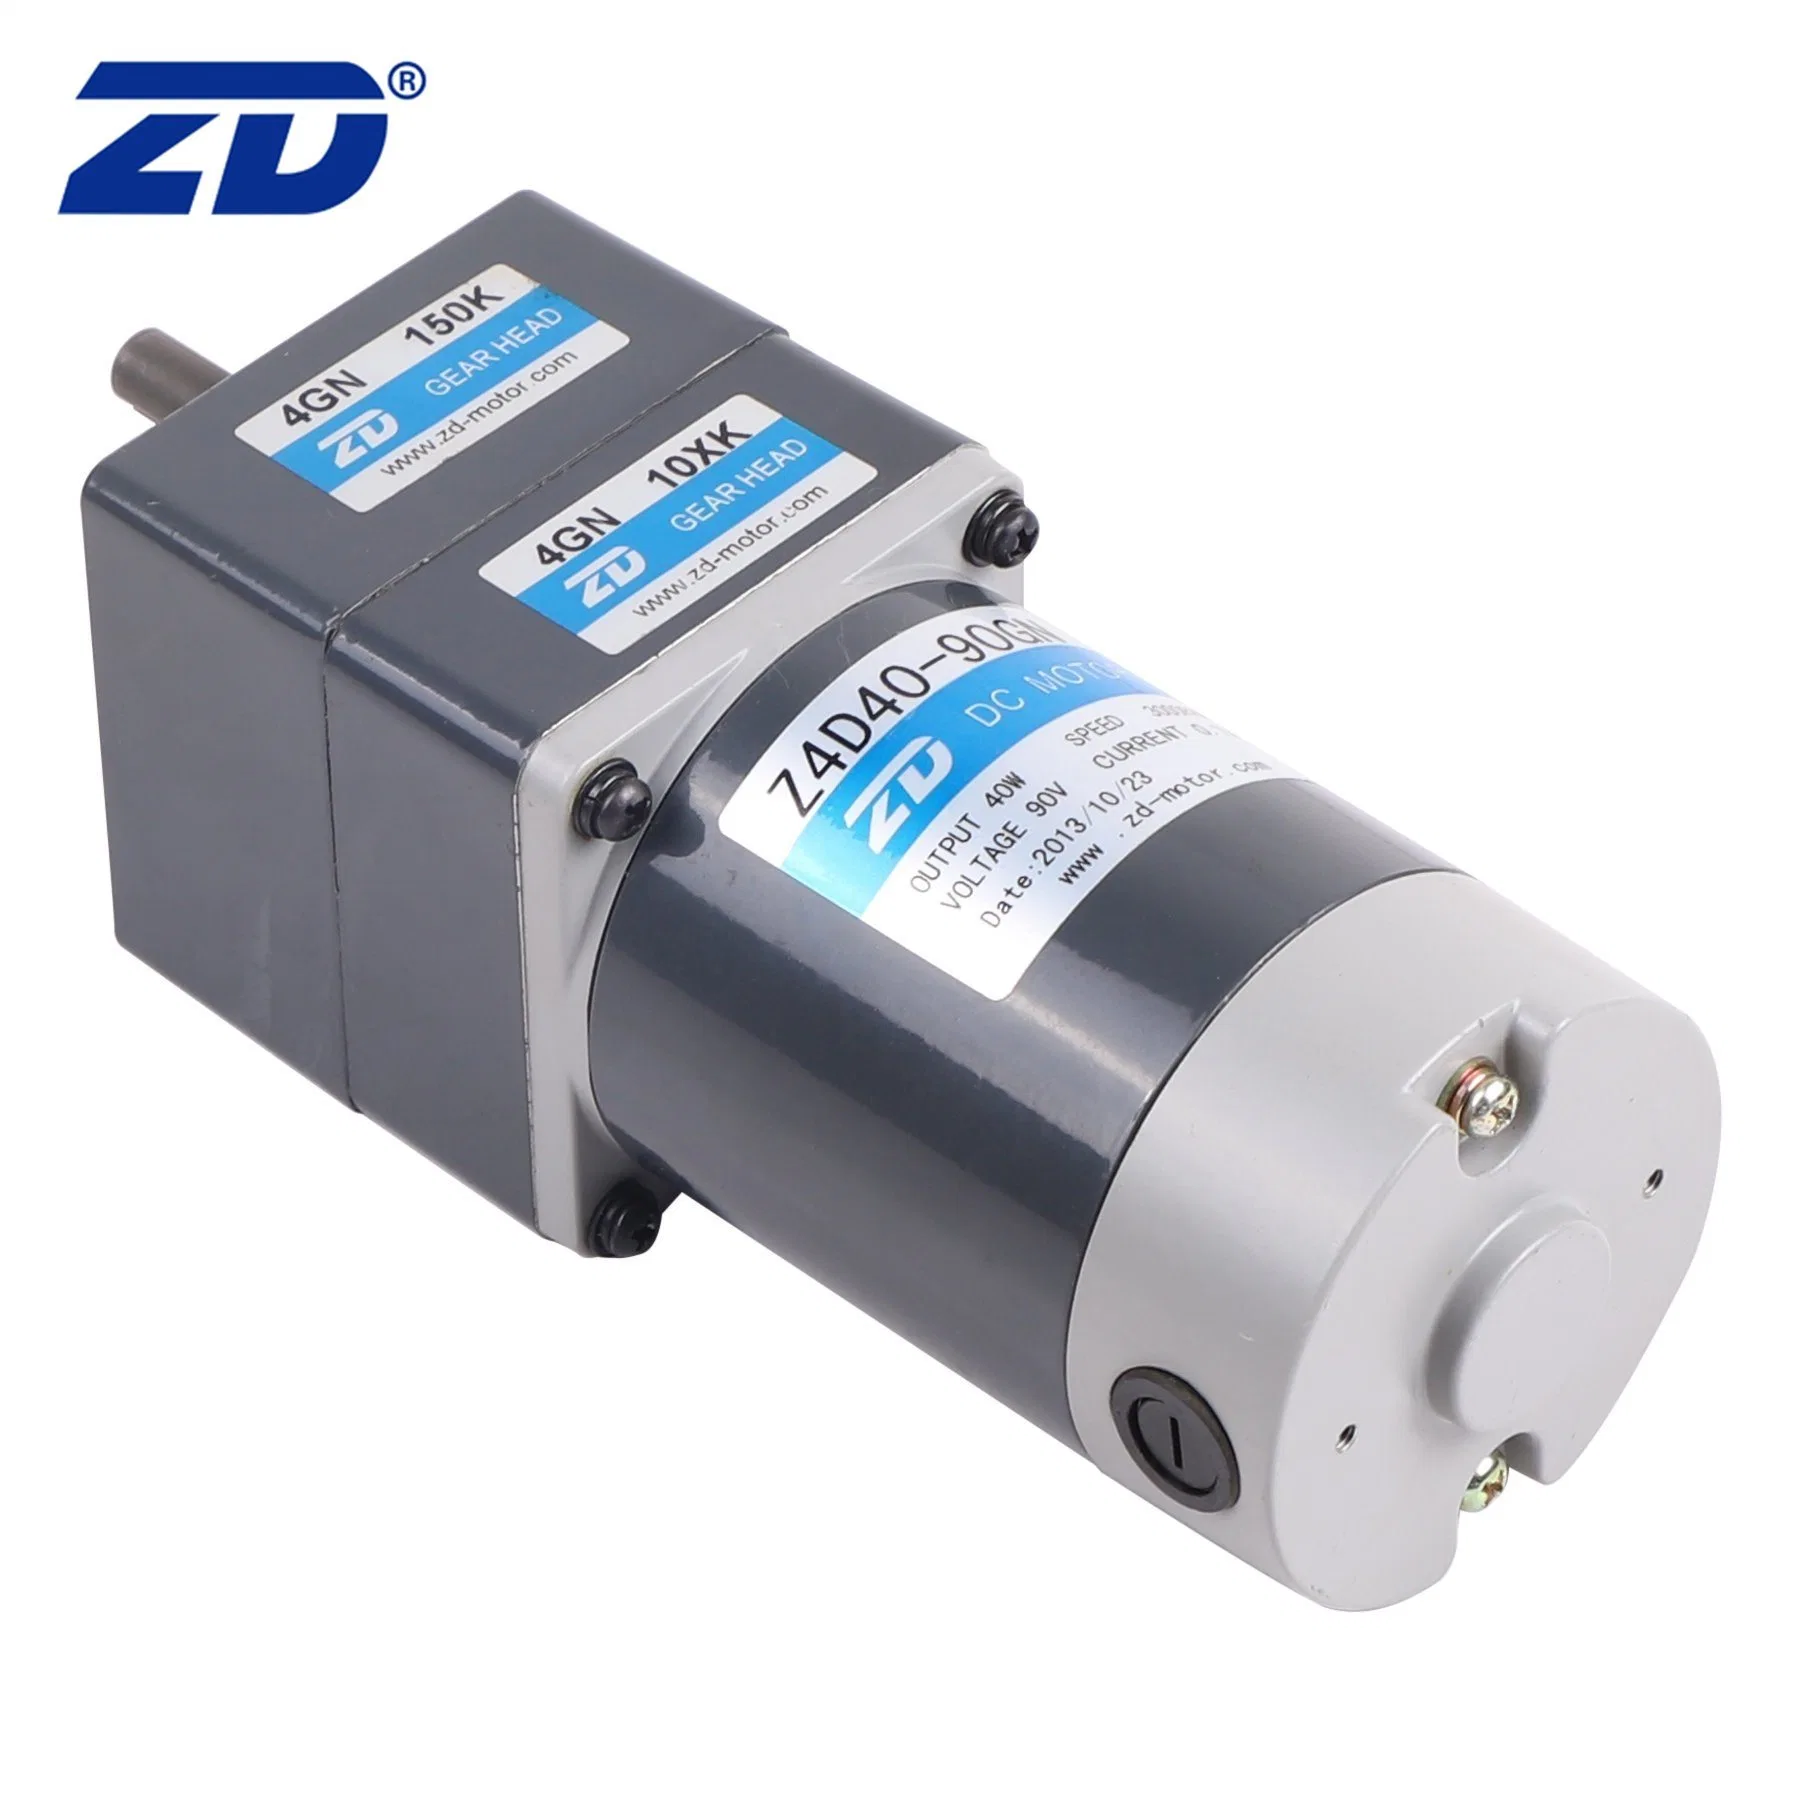 ZD seguro y fiable rendimiento eléctrico de cepillado DC motorreductor con caja de engranajes planetarios